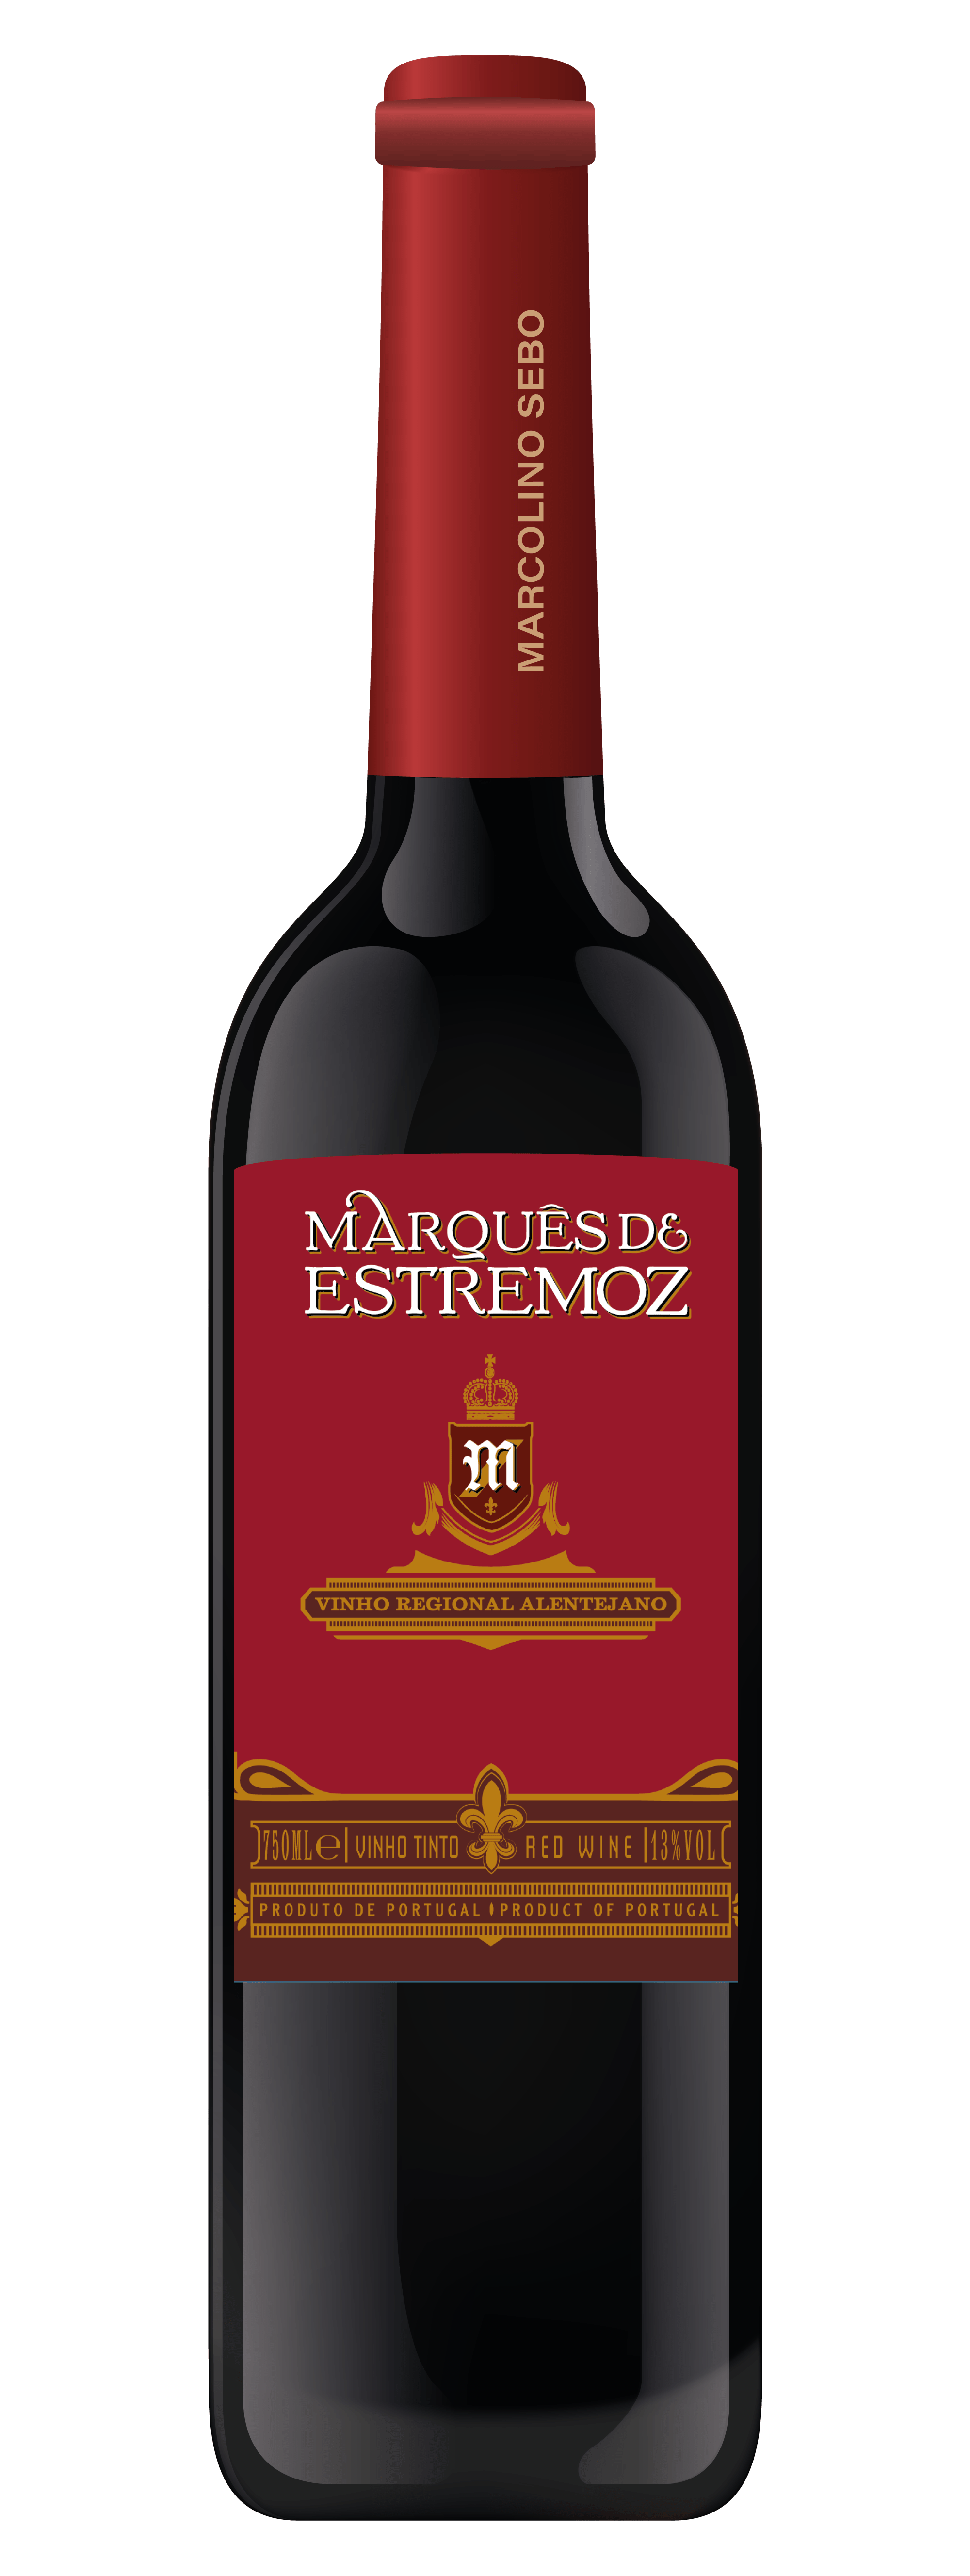 Vinho Tinto Fino Seco - Marquês De Estremoz Blend 2019 750ml